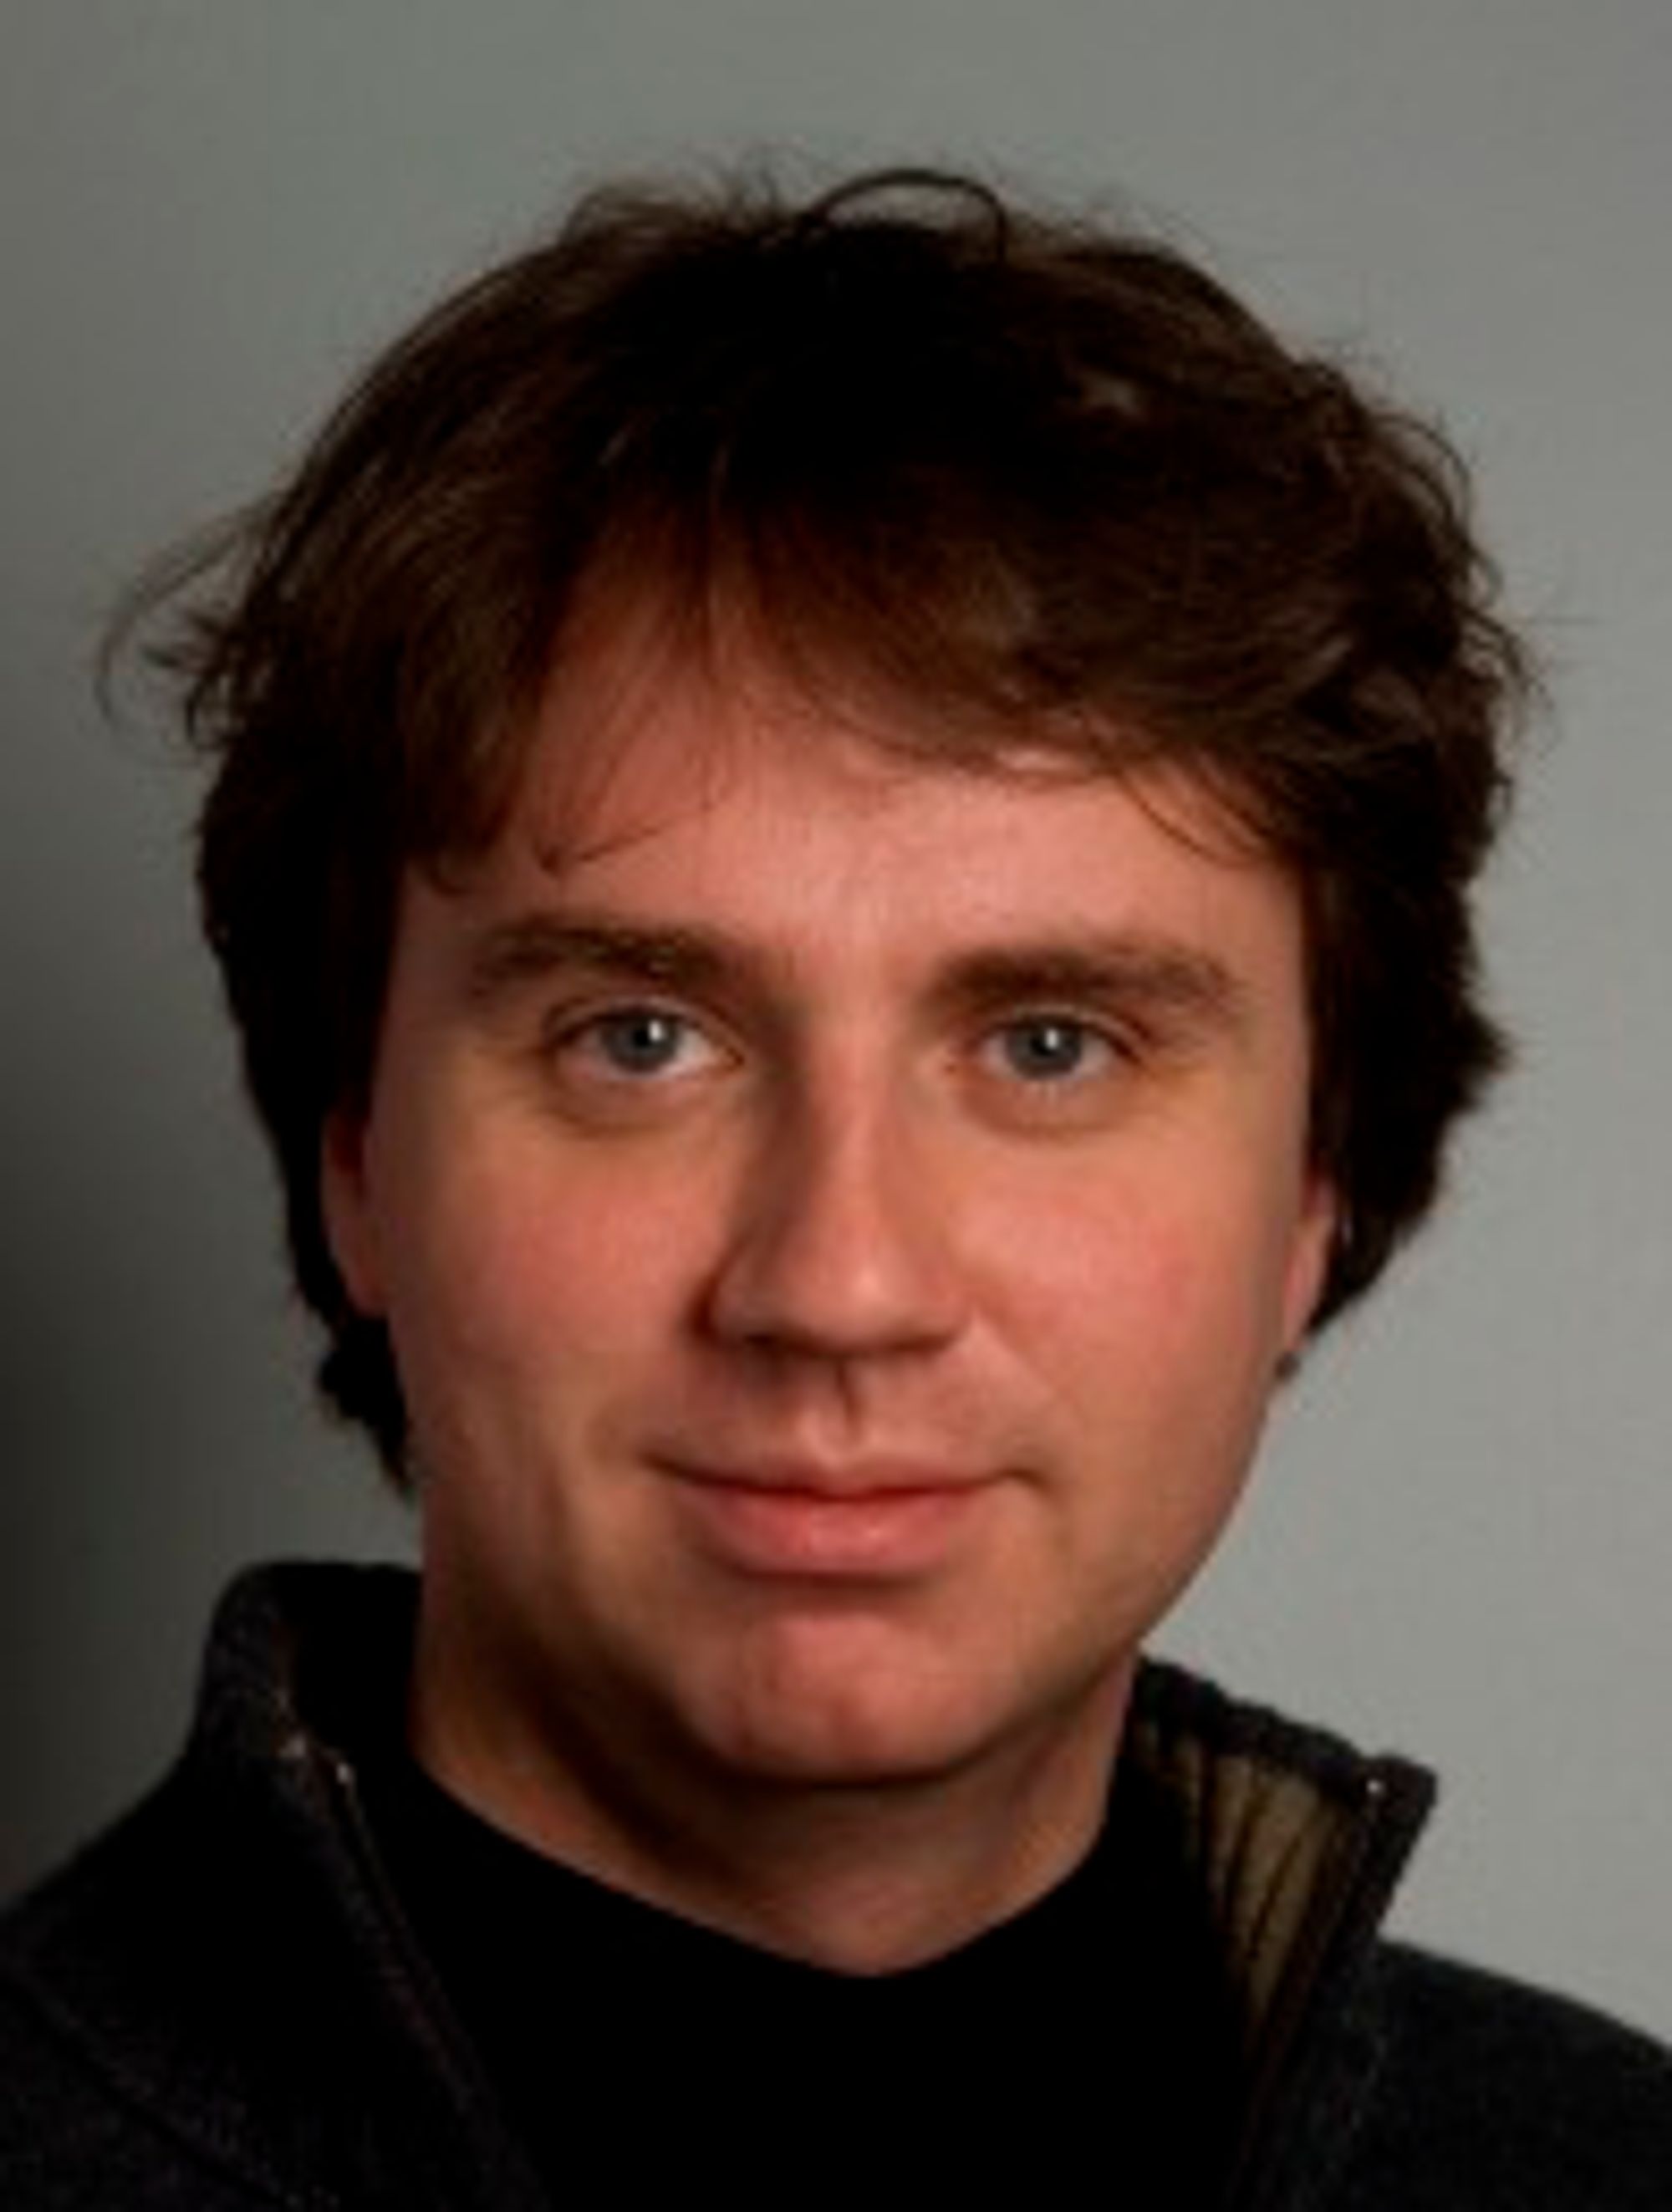 Úšlfar Erlingsson er forskningssjef for sikkerhet i Google mens han har permisjon på ubestemt tid fra sin stilling som førsteamanuensis ved Reykjavík universitet.